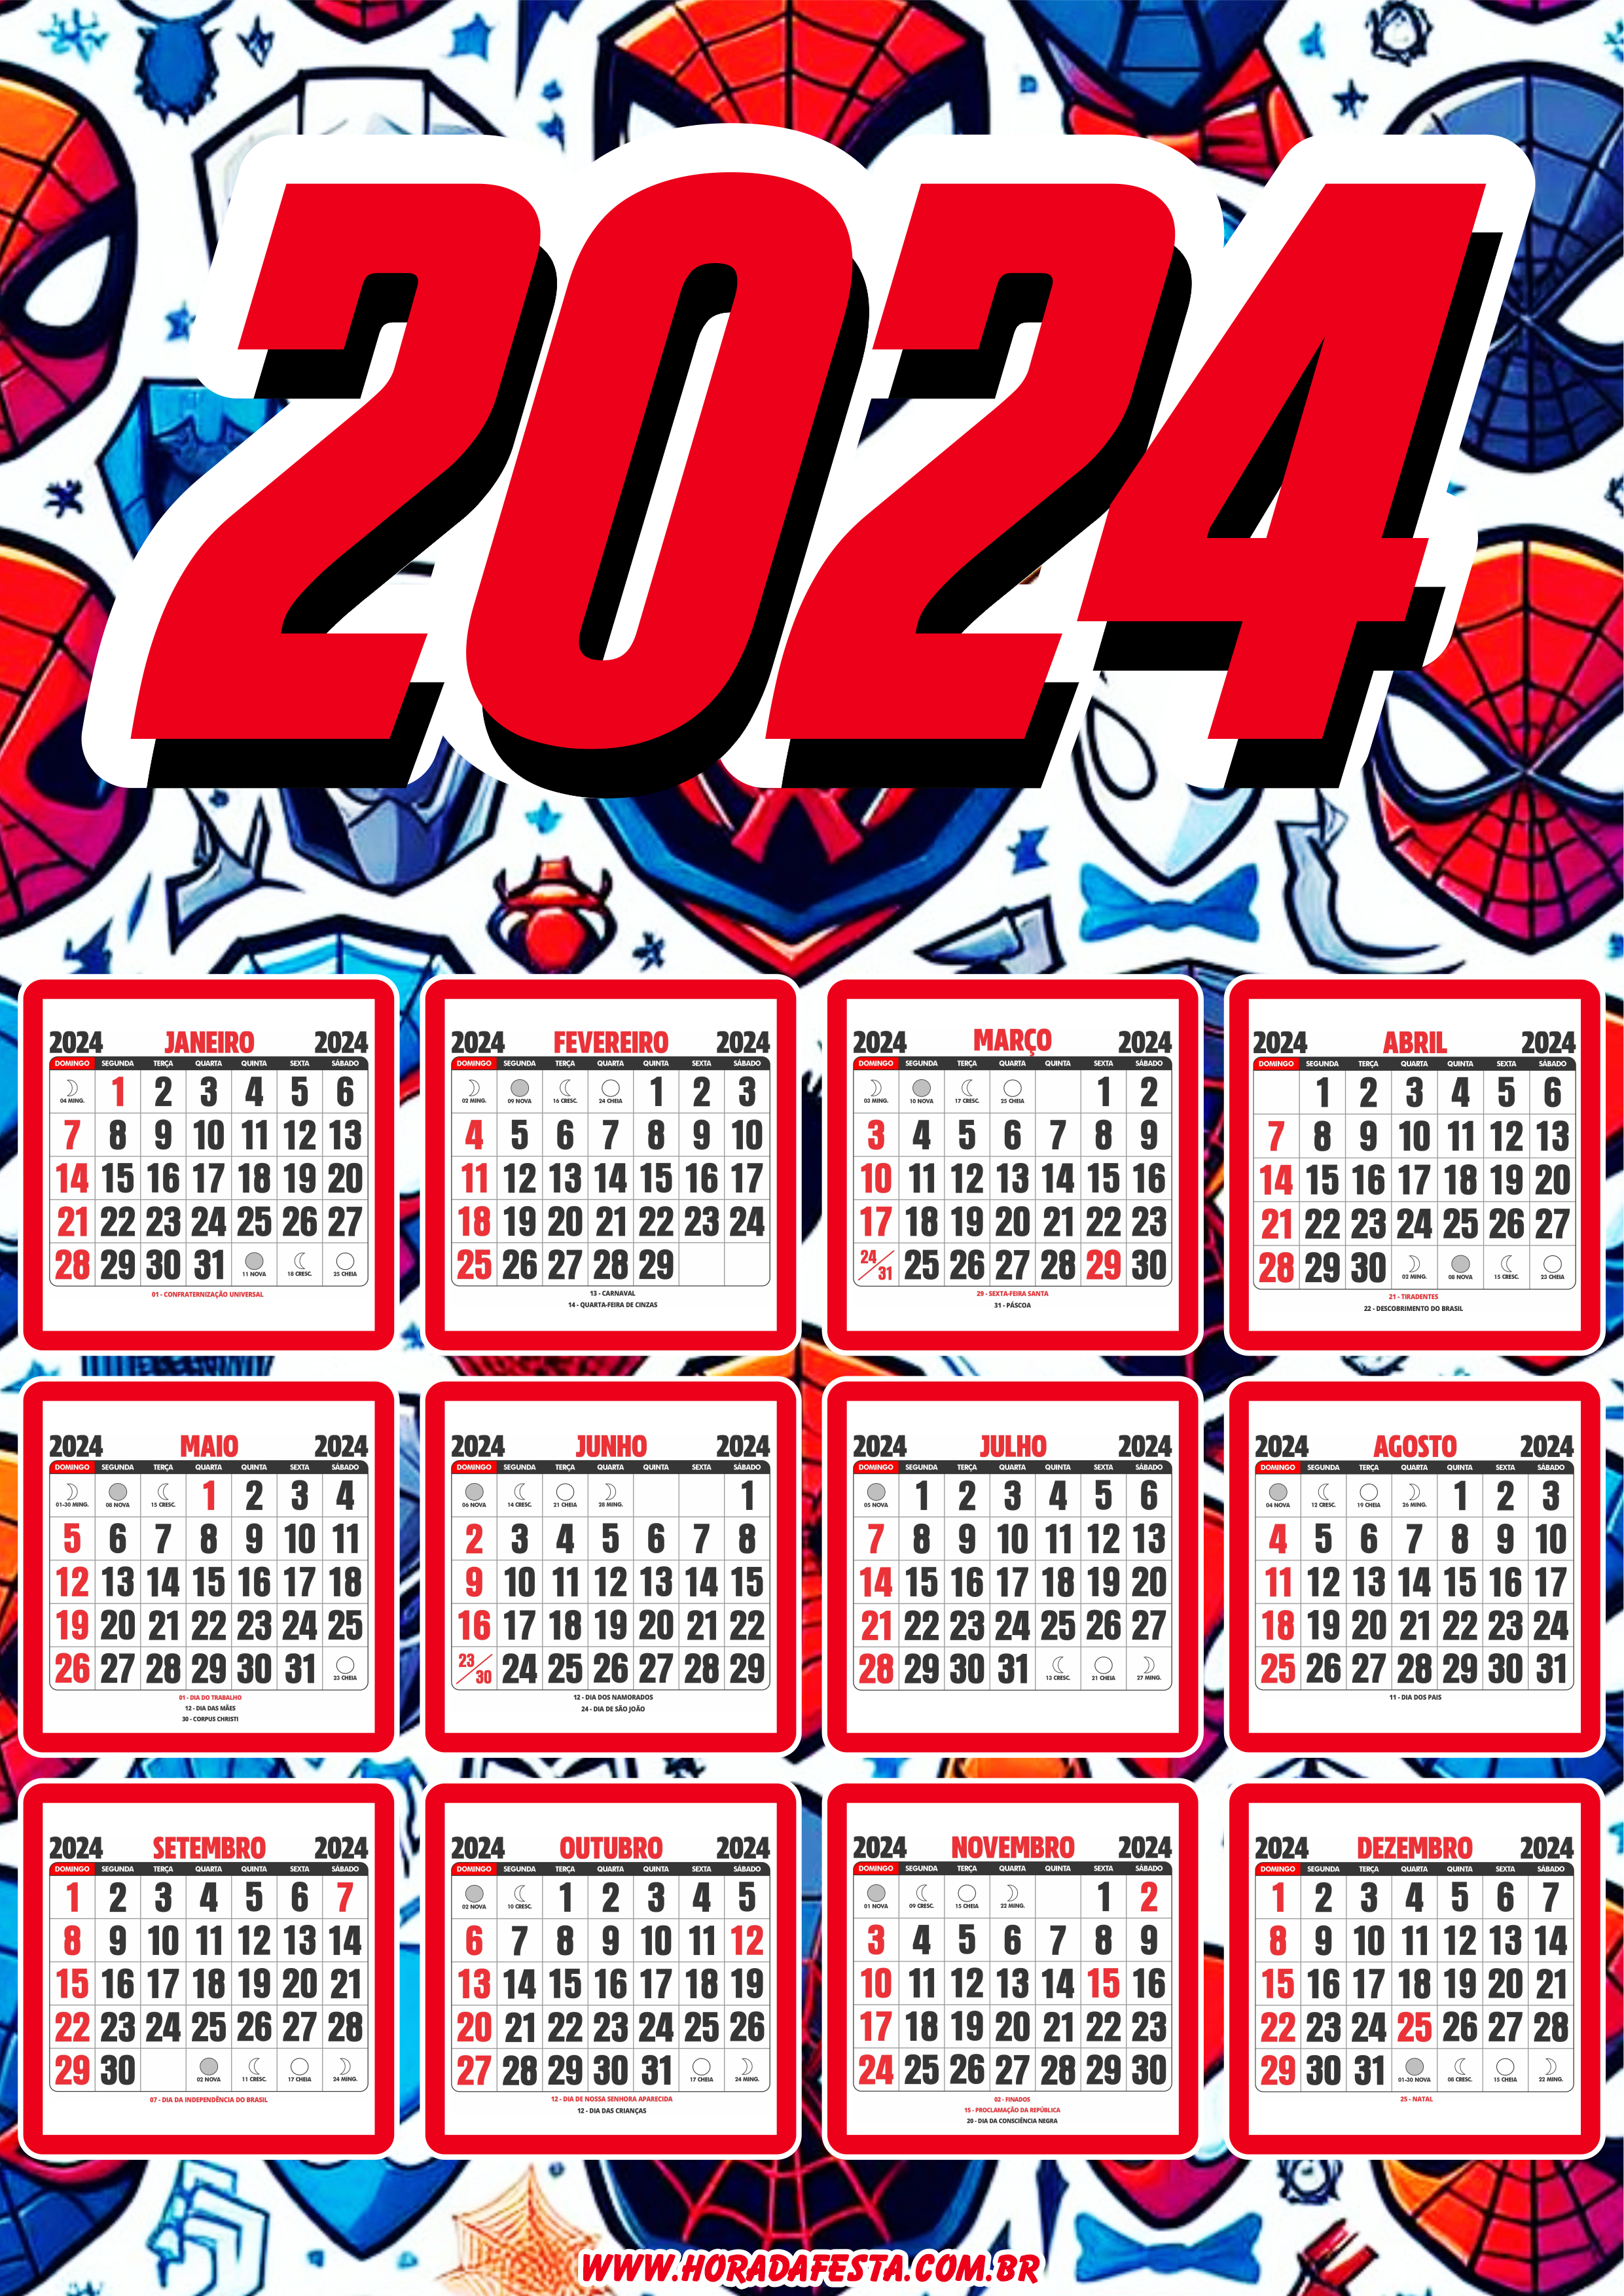 Calendário 2024 personalizado homem aranha spider man artigos de papelaria para festa infantil pronto para imprimir png